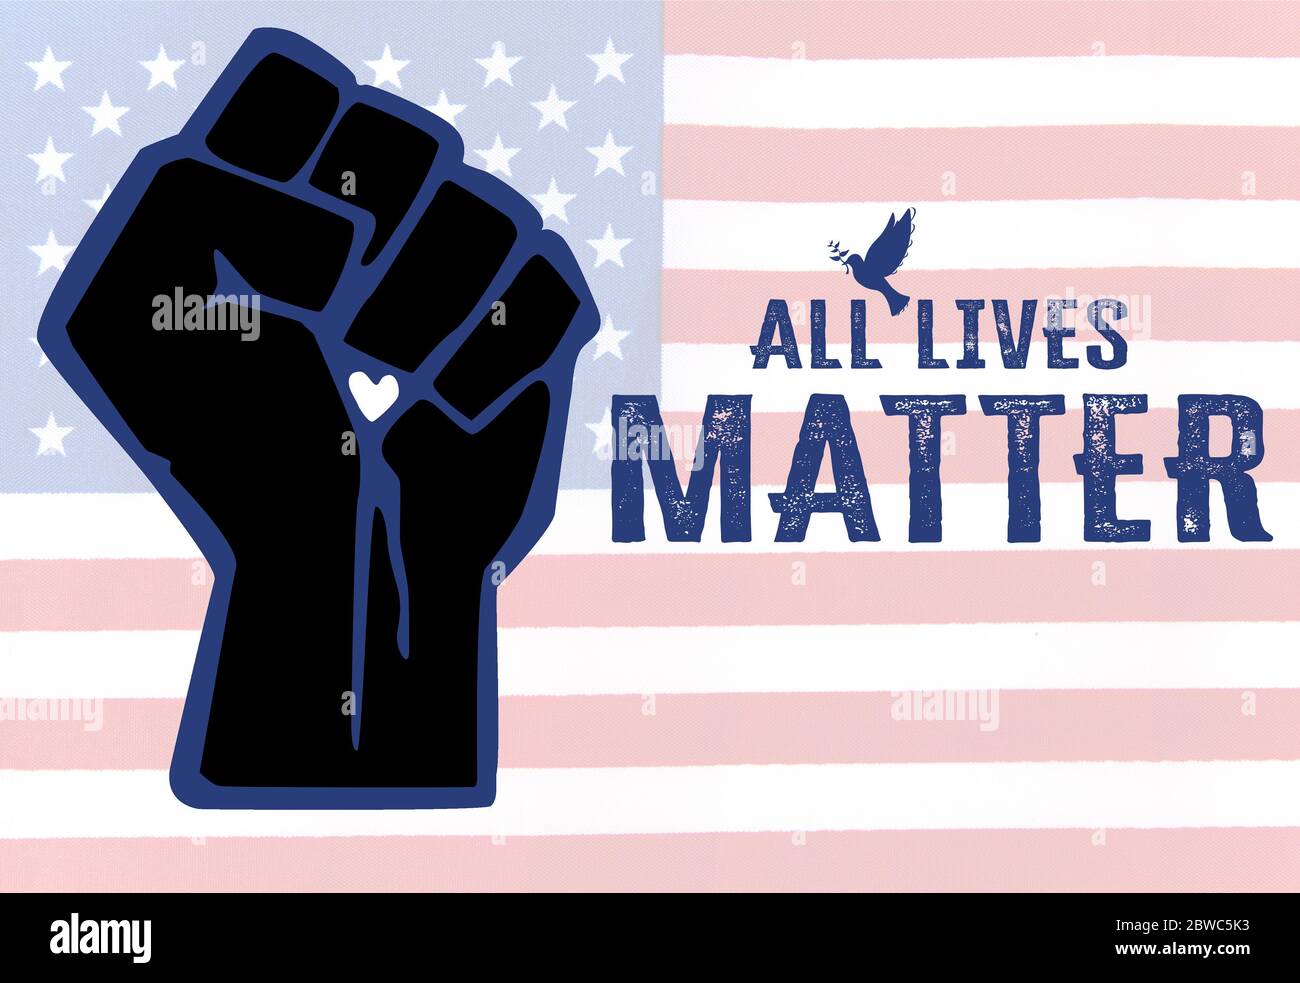 Konzeptbild der Friedensbewegung All Lives Matter, um schwarze Leben in der amerikanischen US-Gesellschaft zu stoppen und die Polizeibehörden zu unterstützen Stockfoto